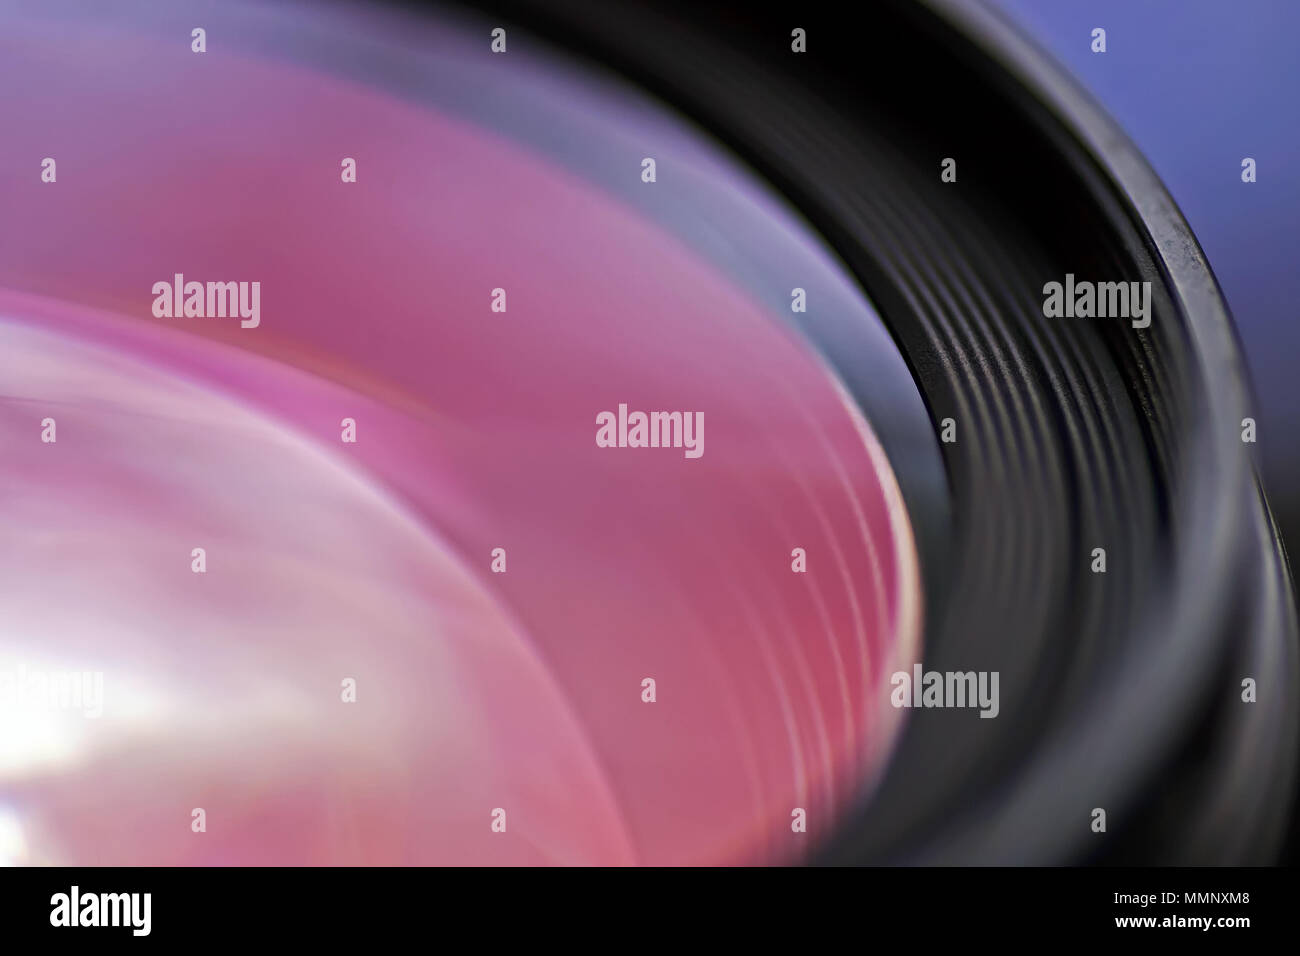 El distintivo revestimiento antirreflejos de la lente de una cámara. Foto de stock